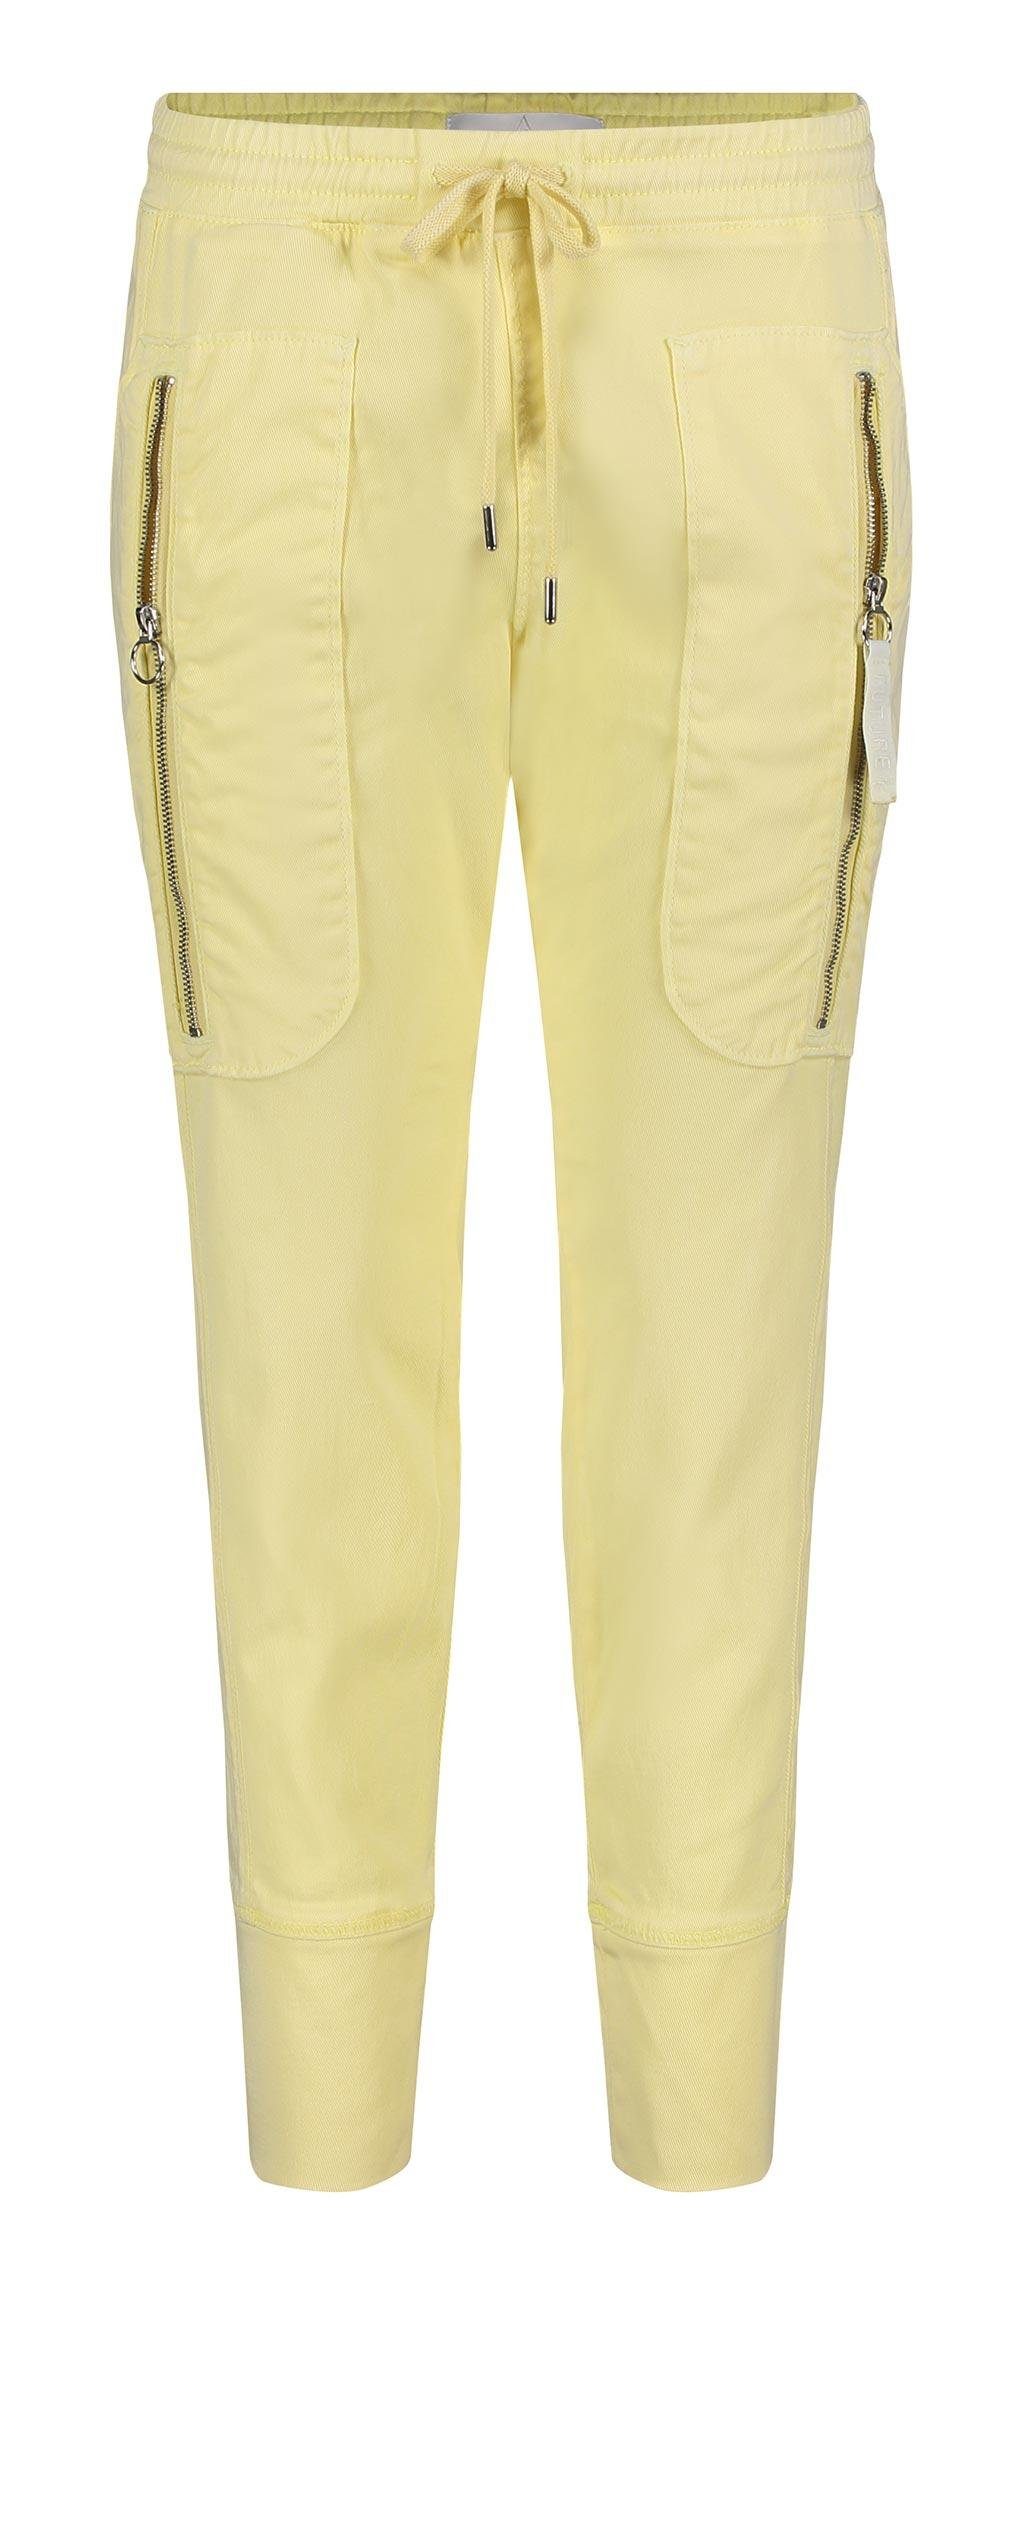 MAC Stretch-Jeans MAC FUTURE light yellow 2705-00-0404L-504R